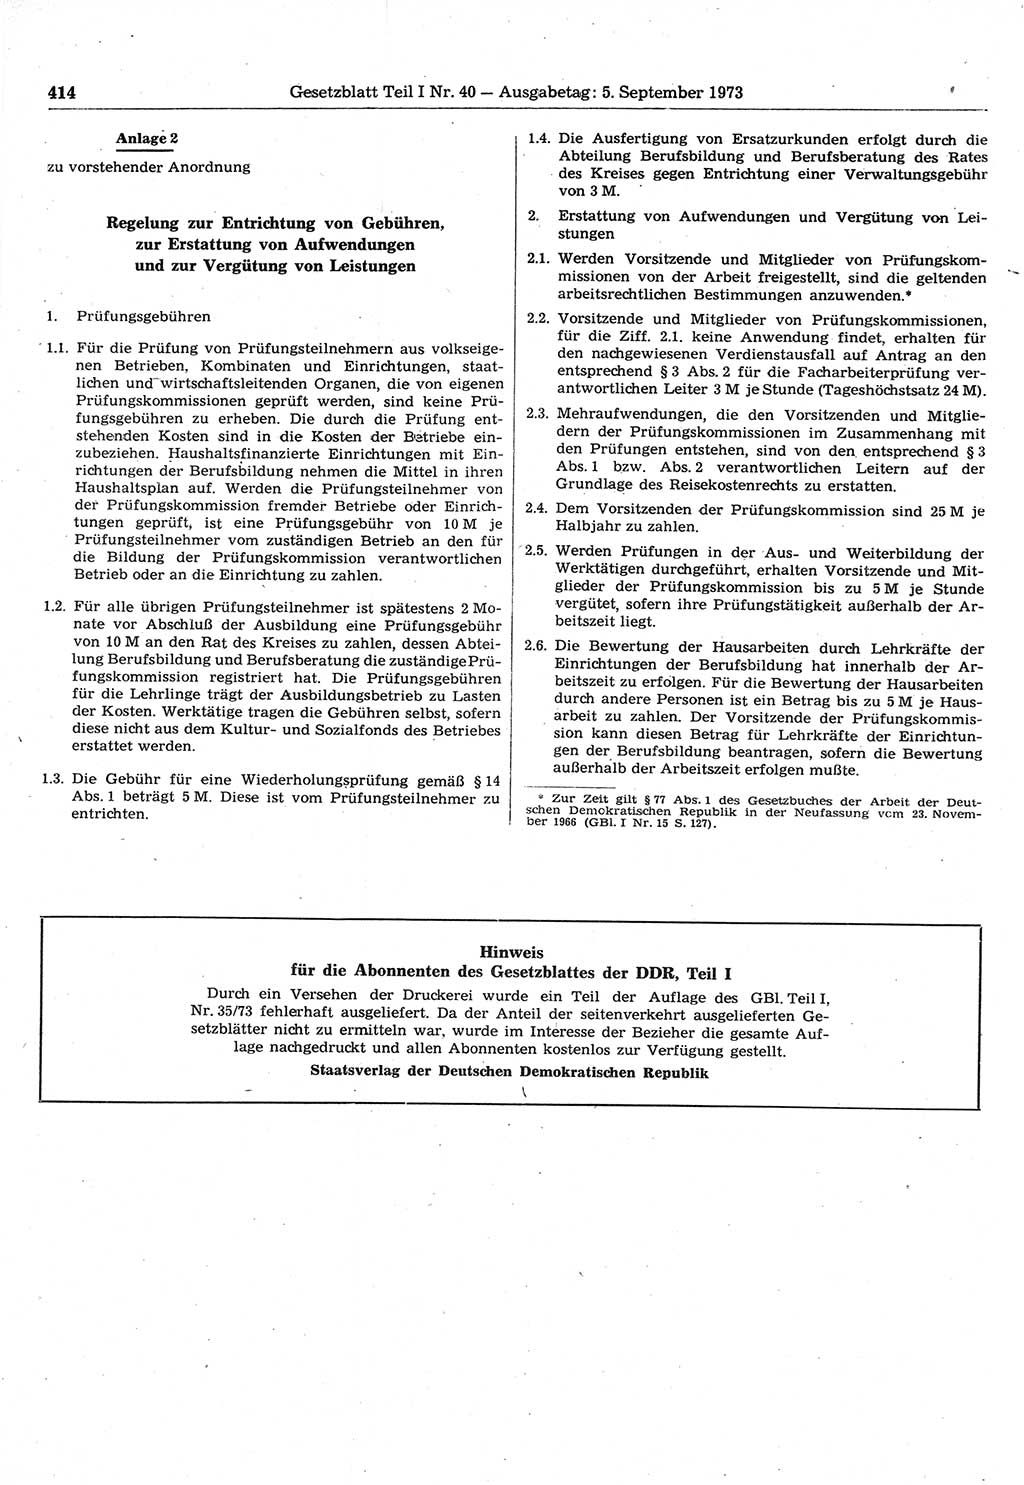 Gesetzblatt (GBl.) der Deutschen Demokratischen Republik (DDR) Teil Ⅰ 1973, Seite 414 (GBl. DDR Ⅰ 1973, S. 414)